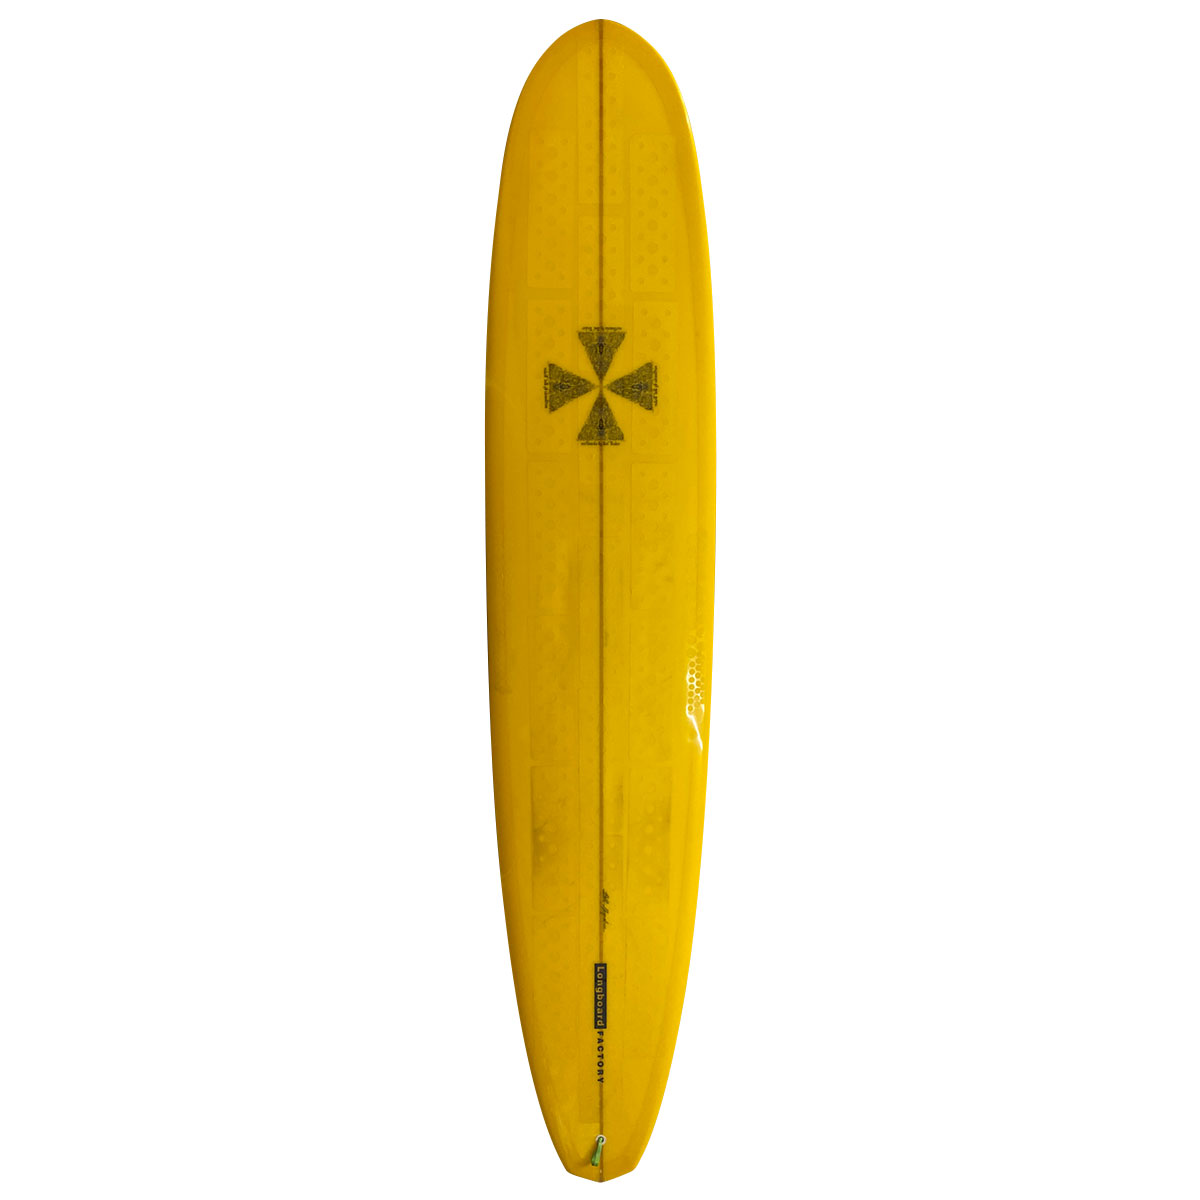 JOEL TUDOR SURFBOARD / JOEL TUDOR SURFBOARD / DIAMOND TAIL shaped by BILL SHROSBREE 9`0